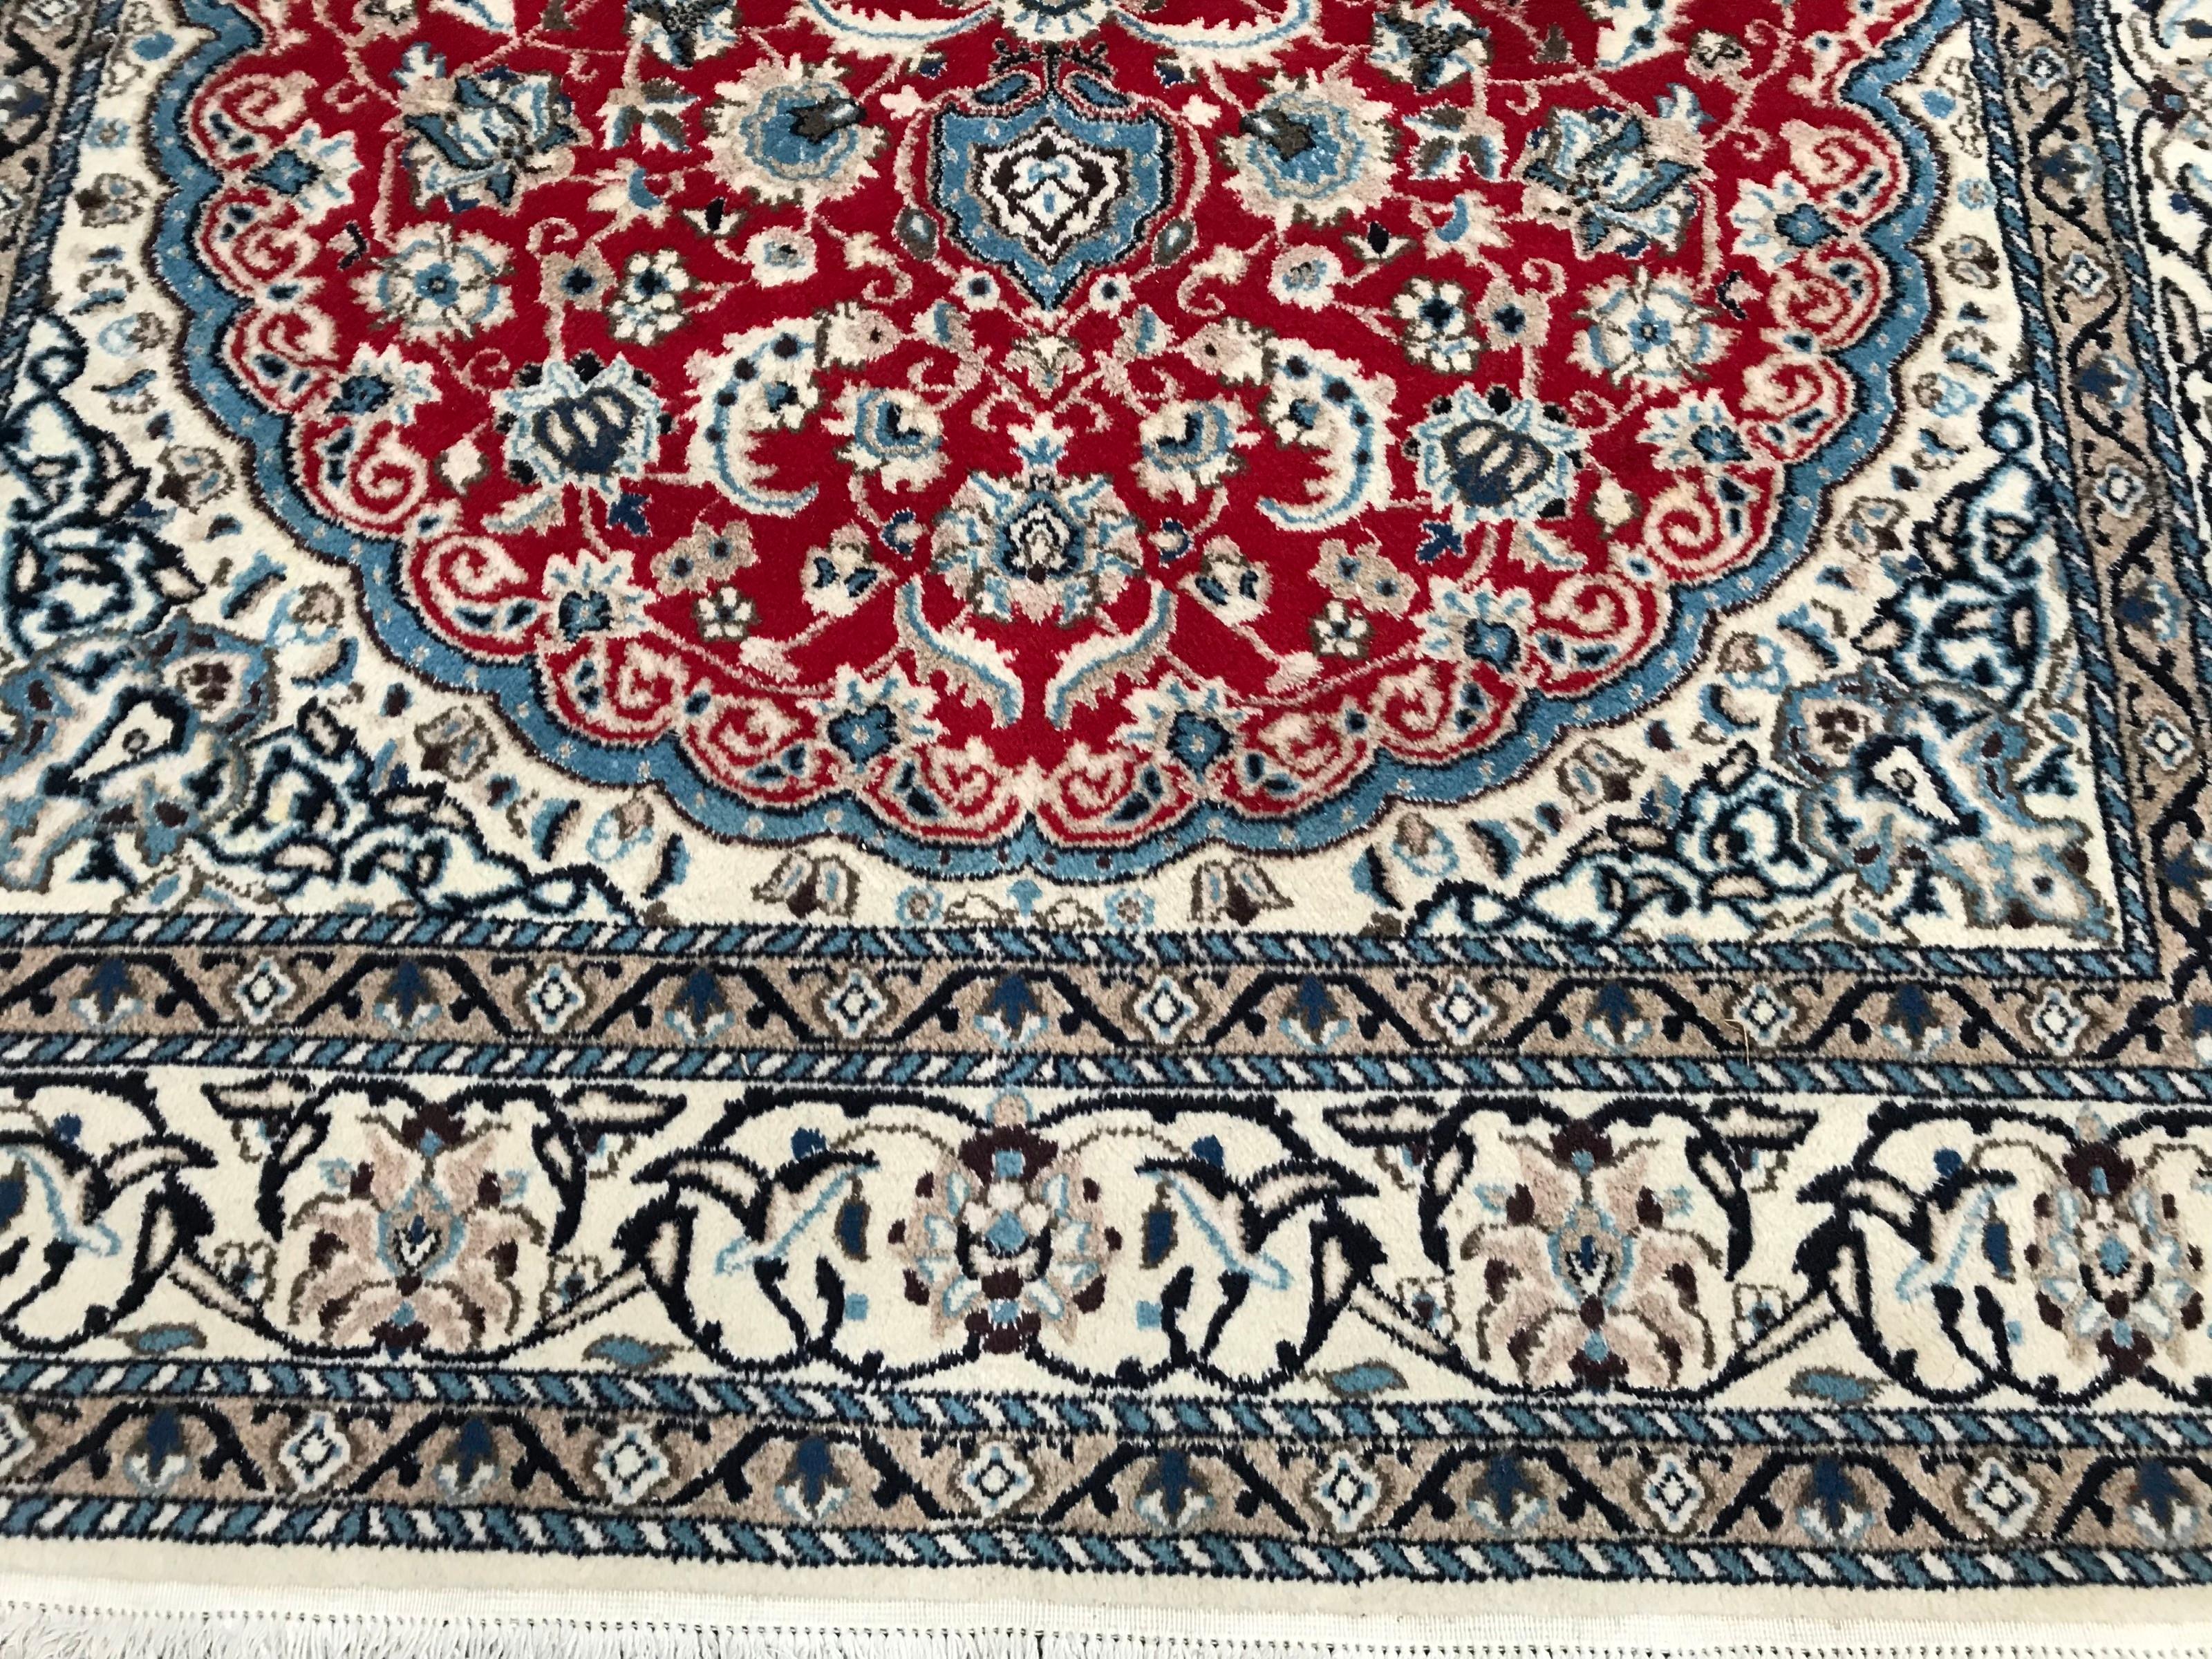 Schöner Teppich aus dem 20. Jahrhundert mit einem hübschen Blumenmuster und einem zentralen Medaillon, fein handgeknüpft mit Wollsamt auf Baumwollgrund. Maße: 5ft 5in x 7ft 9in.